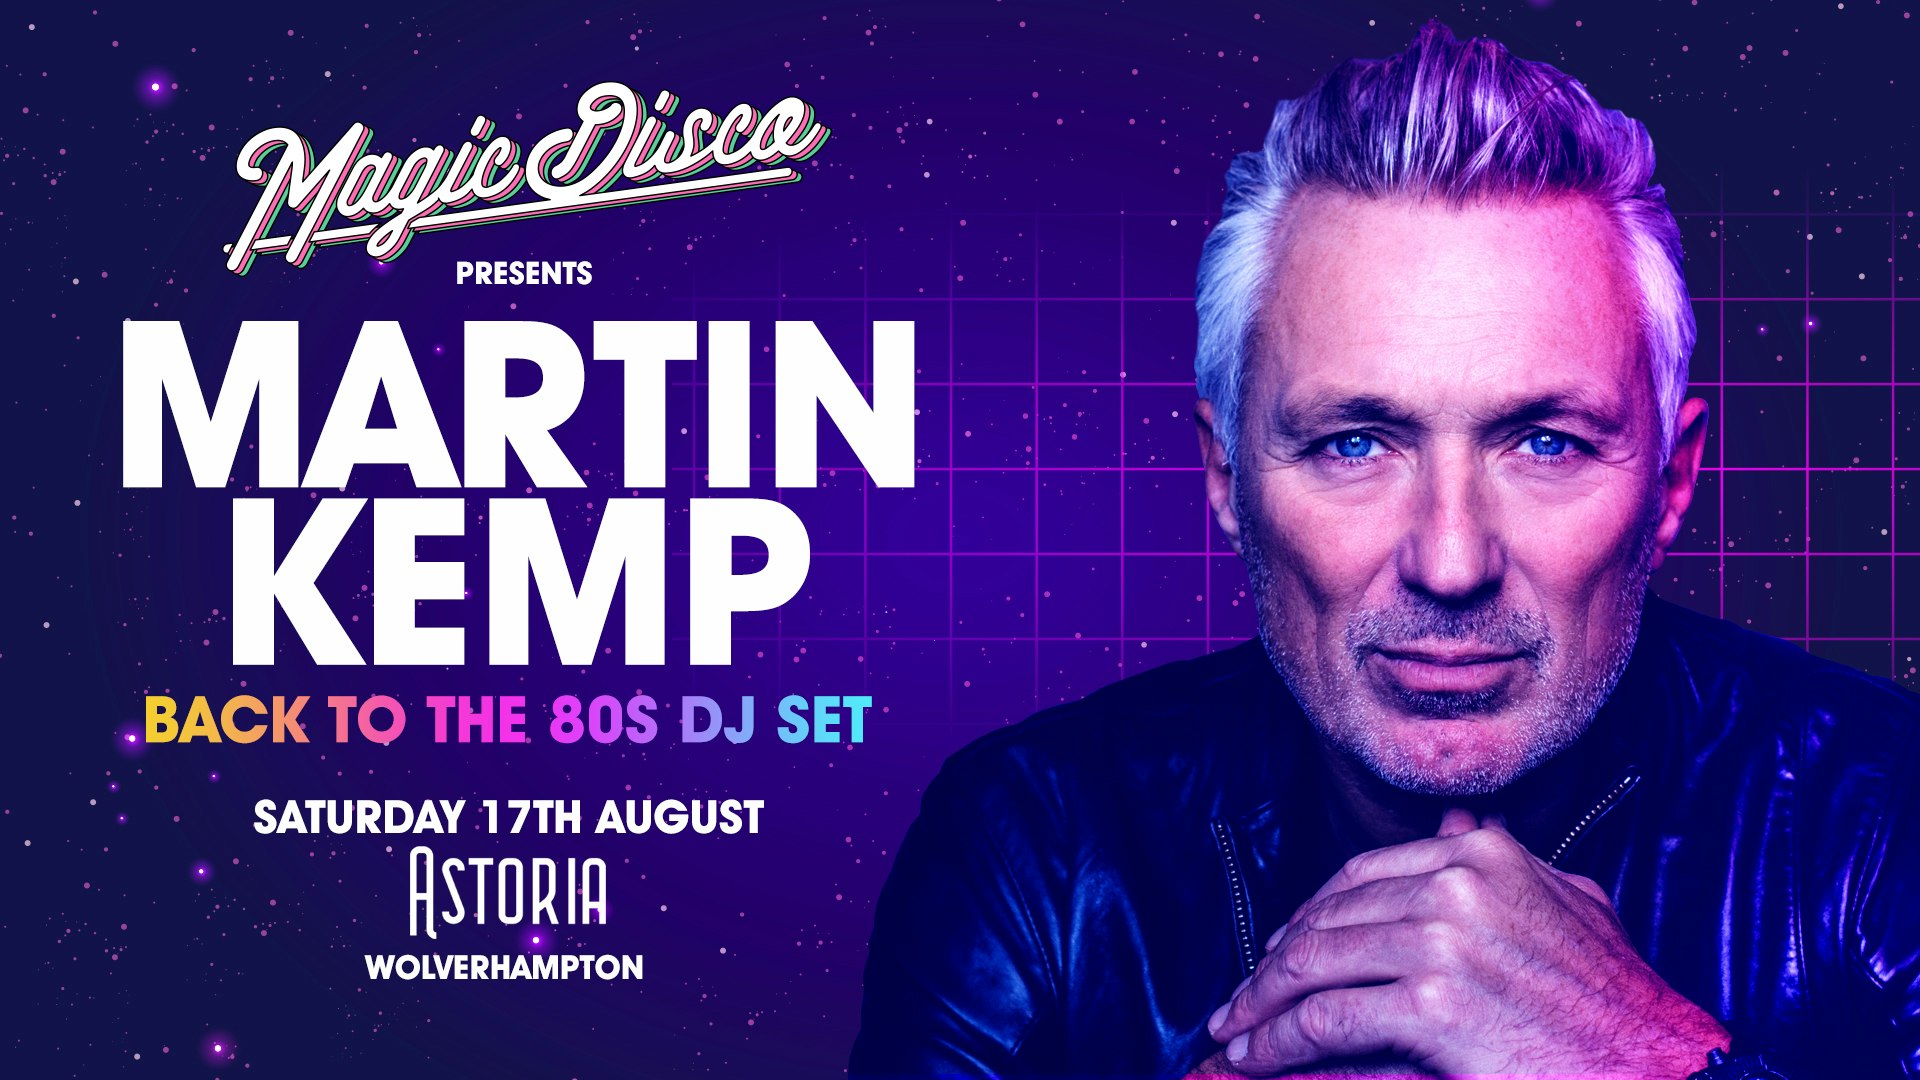 Martin Kemp Live DJ set – Back to the 80’s – Wolverhampton